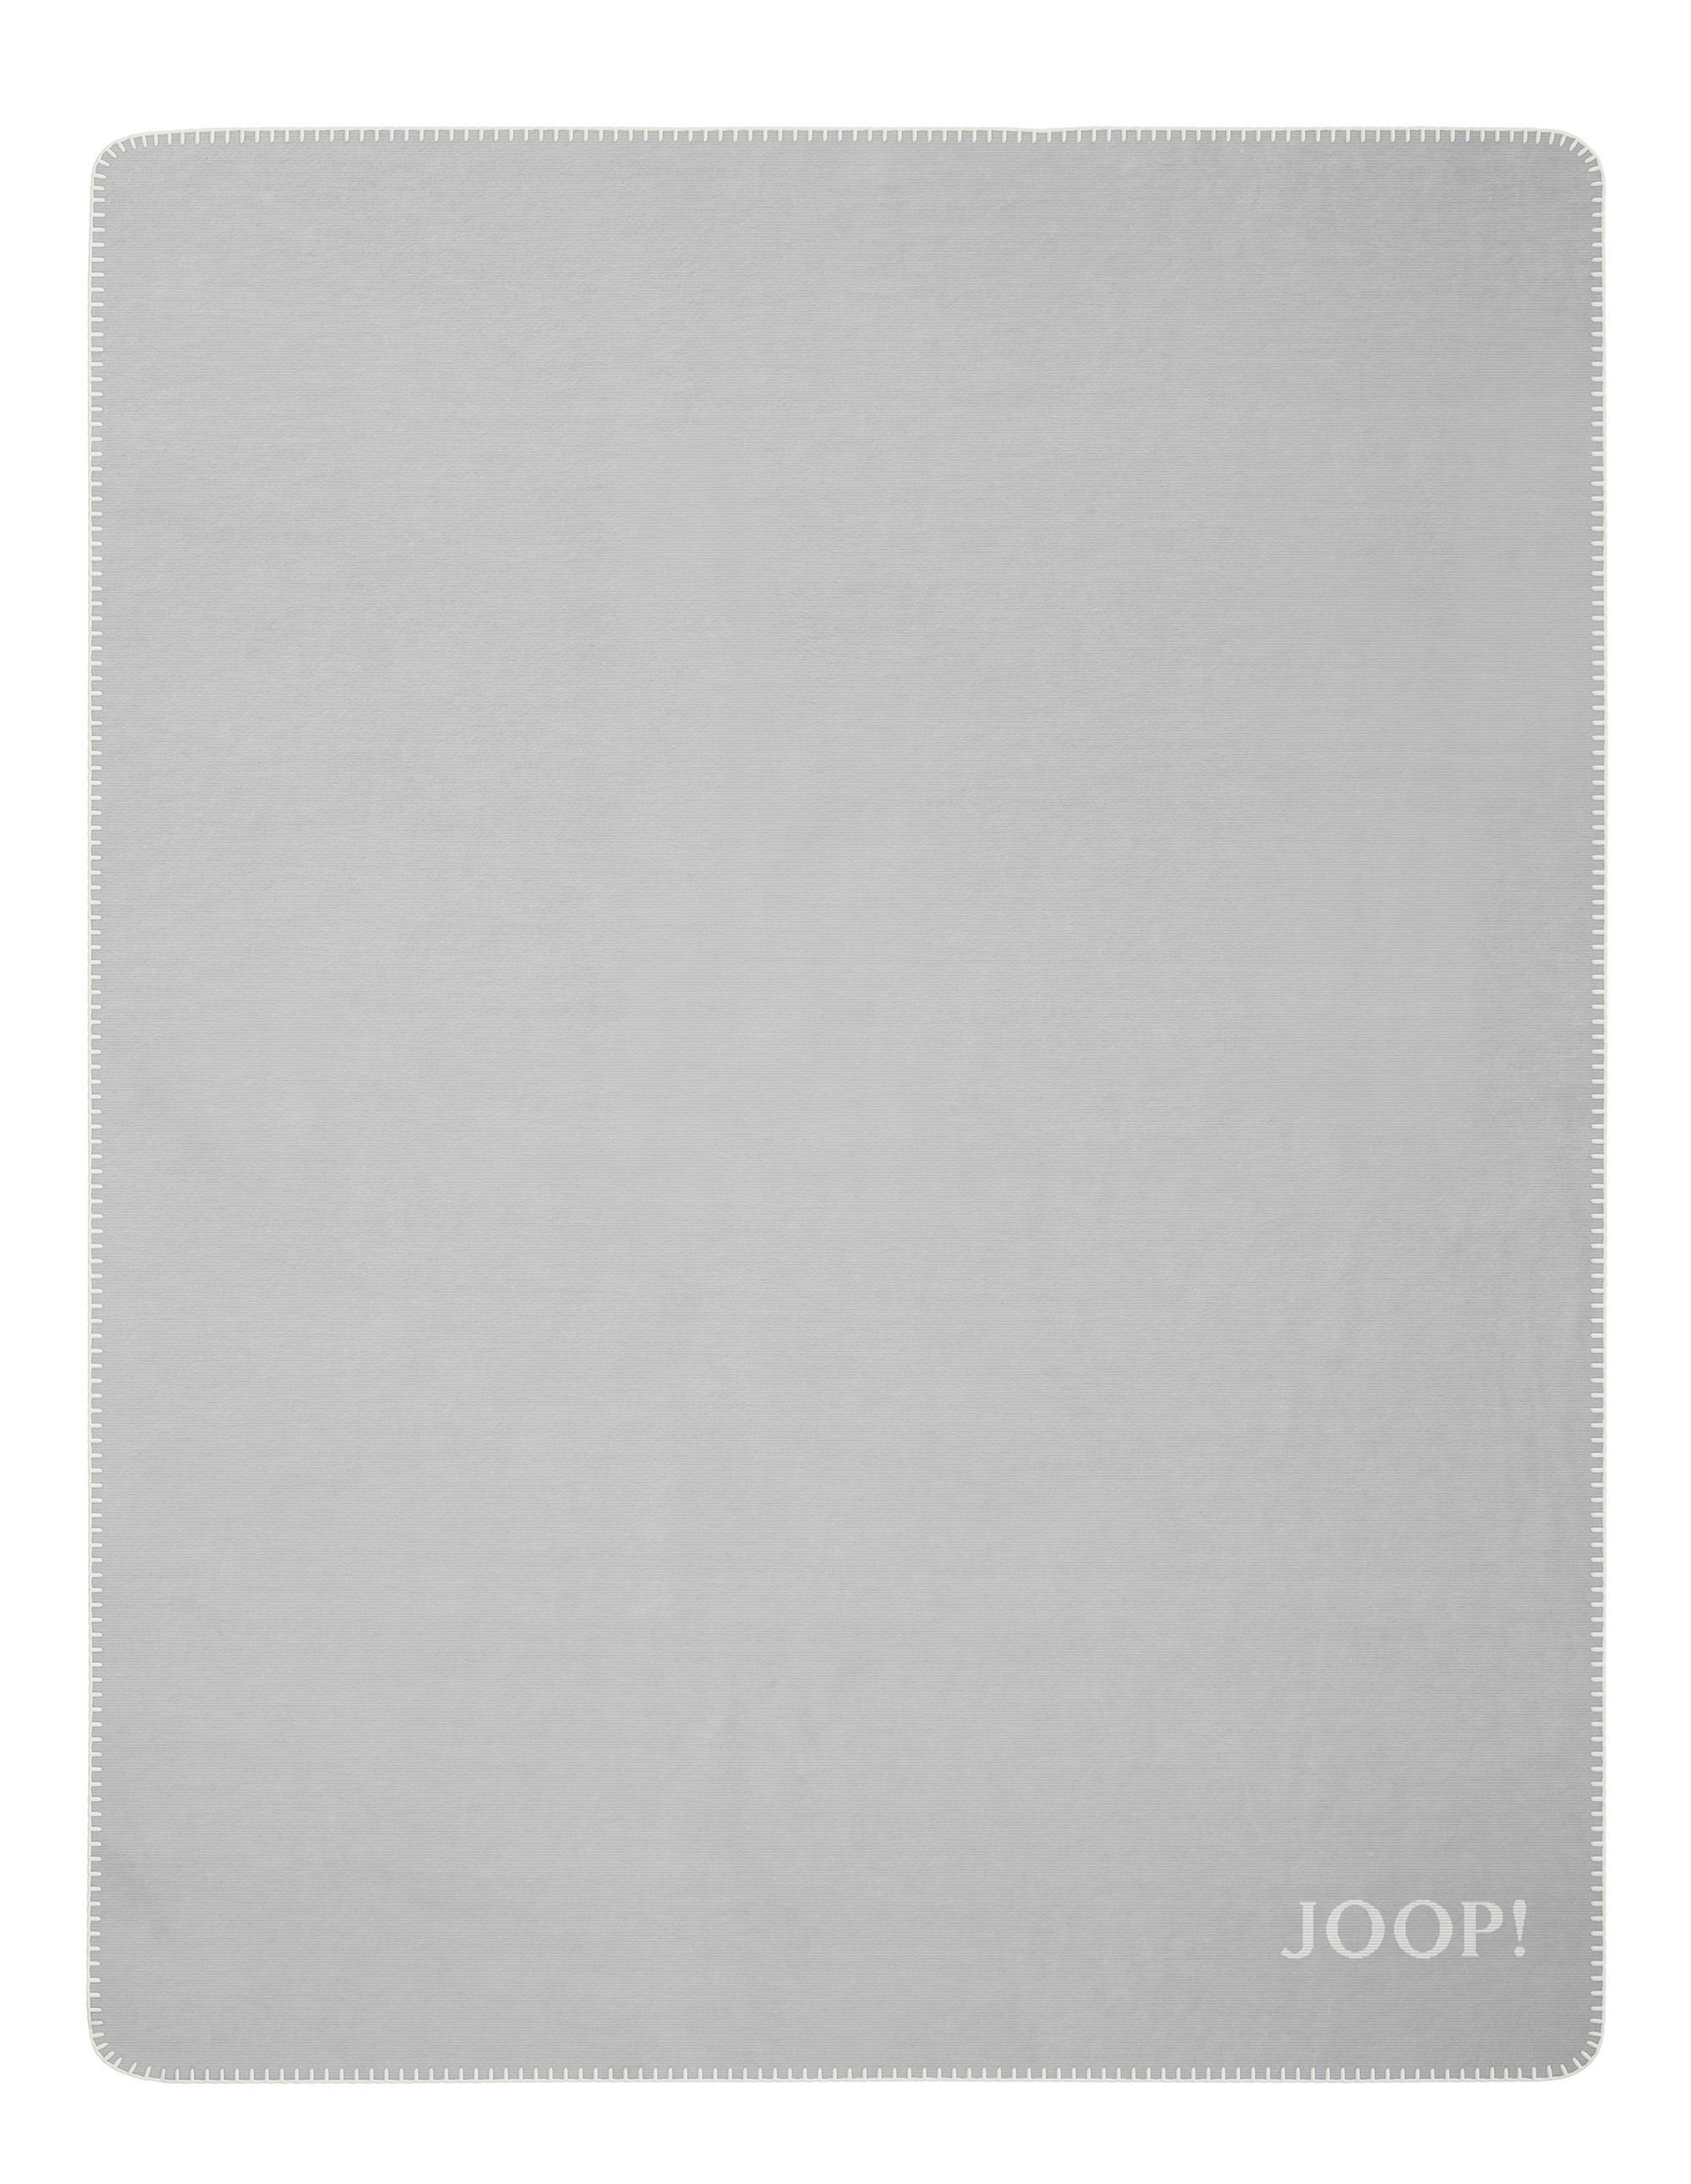 WOHNDECKE Melange Doubleface 150/200 cm  - Silberfarben/Naturfarben, Design, Textil (150/200cm) - Joop!